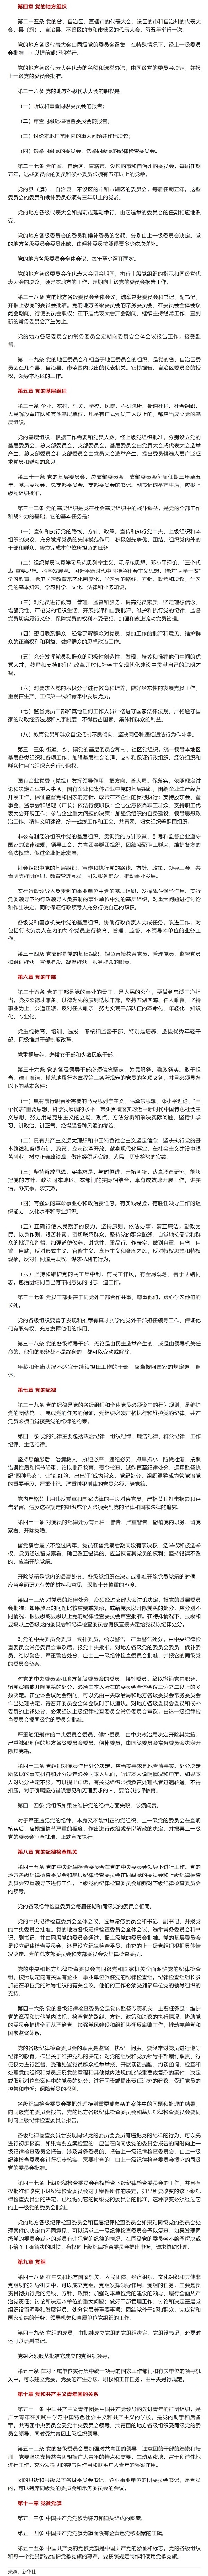 中国共产党章程 - 副本.jpg